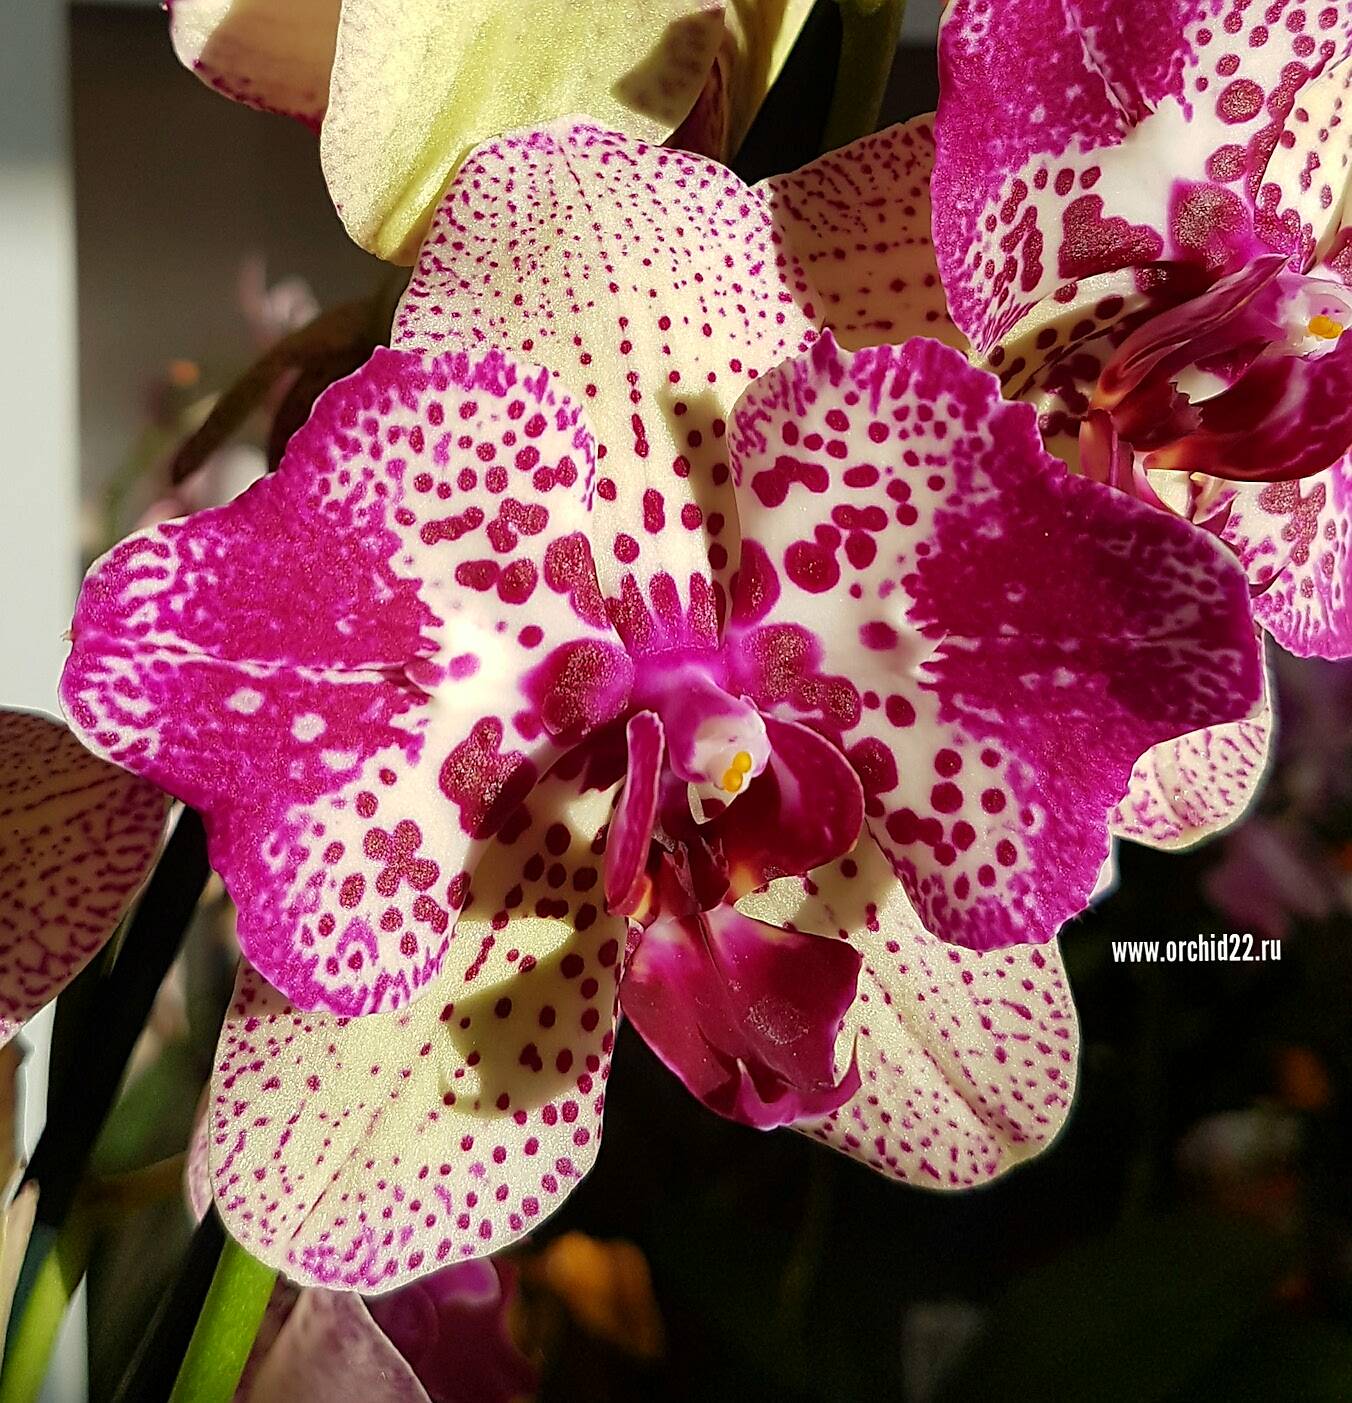 Роскошная орхидея Клеопатра: выращиваем дома красавицу с затейливым узором